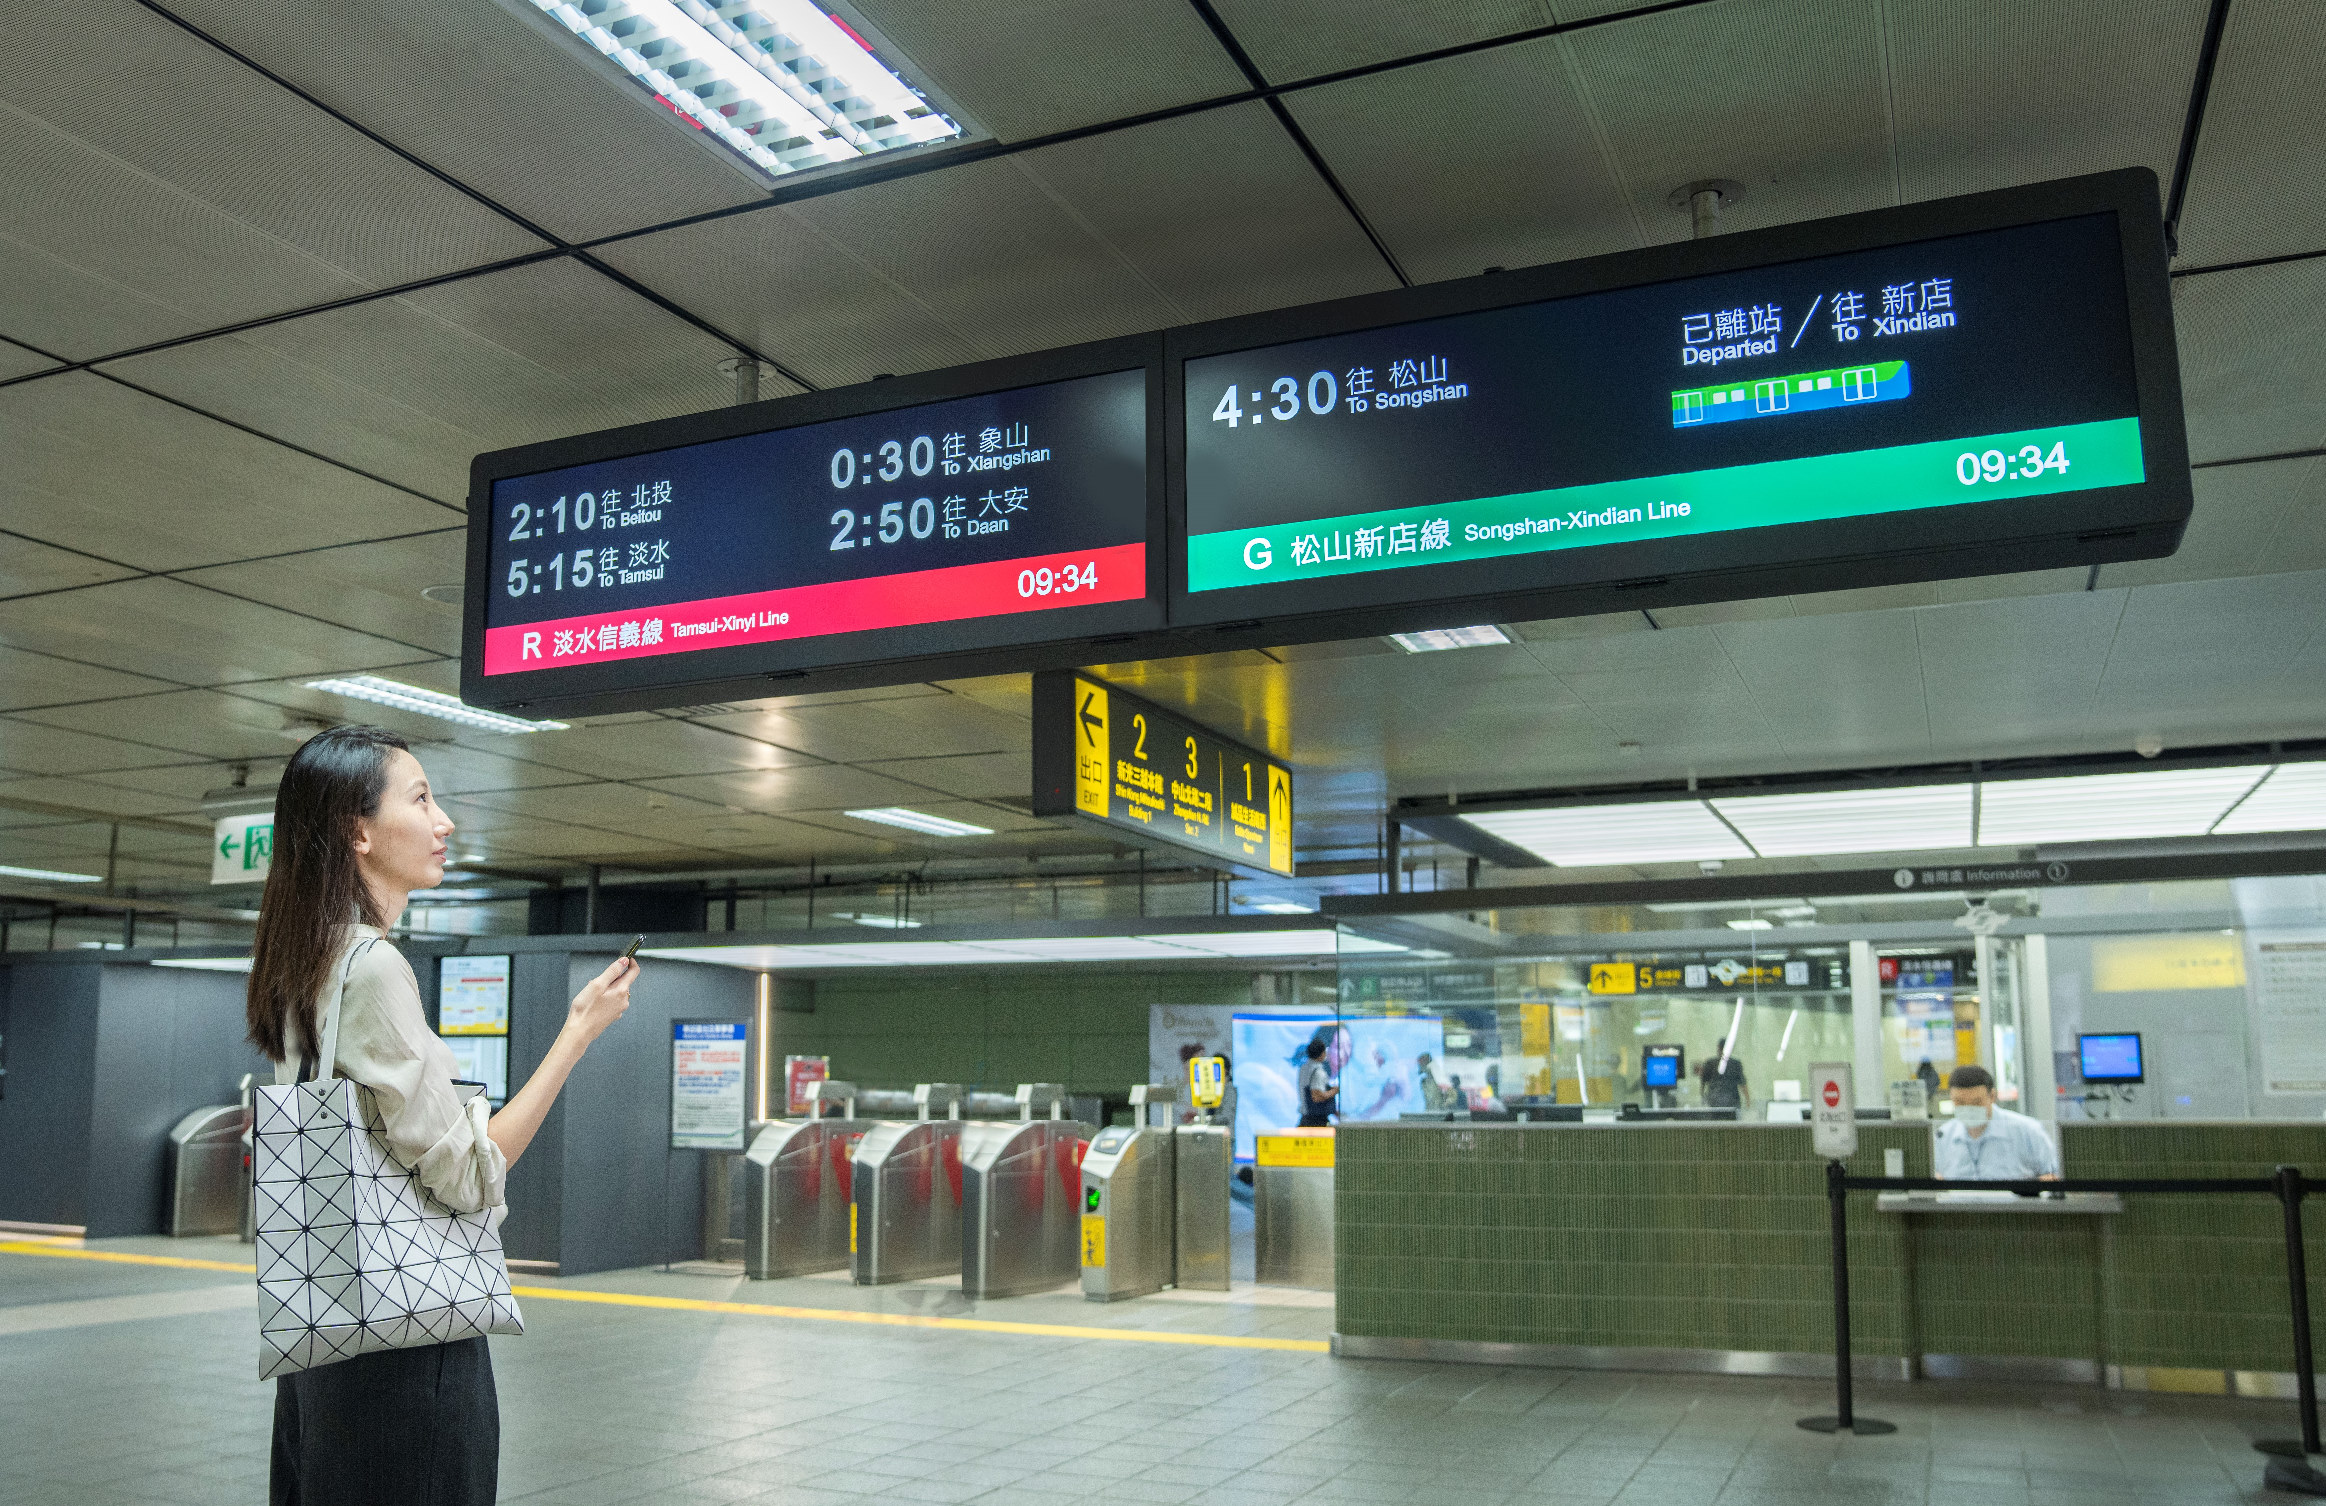 【台北捷運】TARTAN獨特長條型比例顯示器 打造都會智能車站新風貌